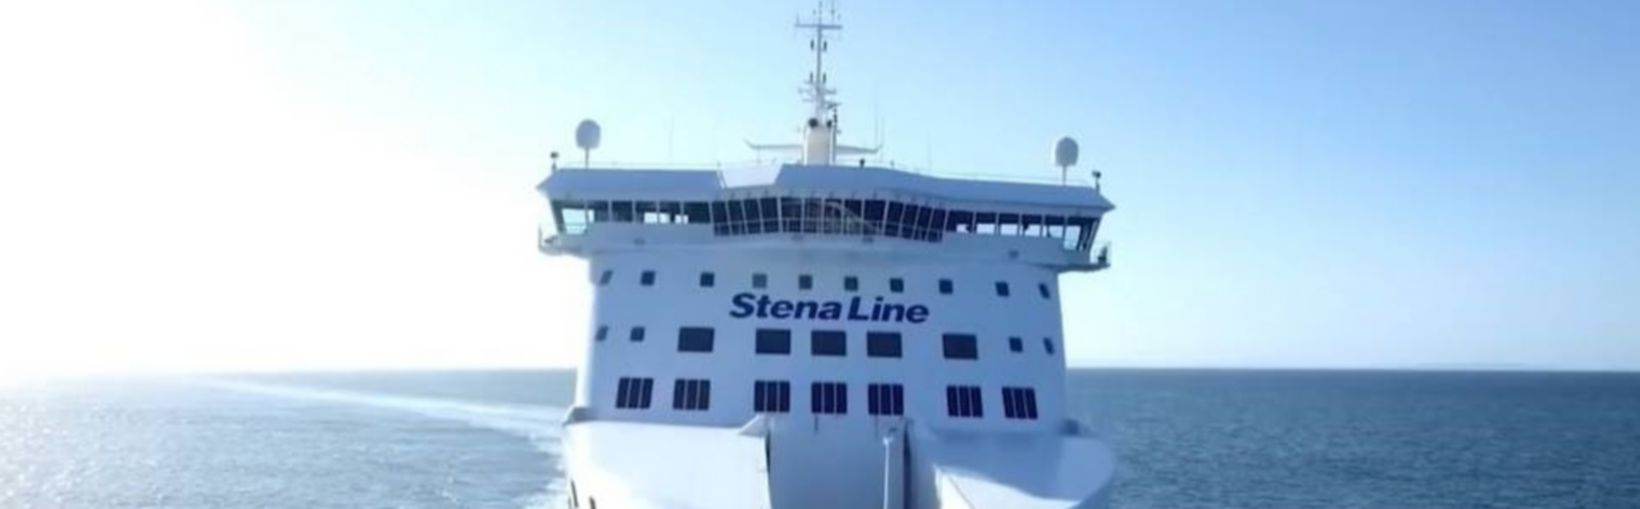 Stena Superfast VIII ferry op zee